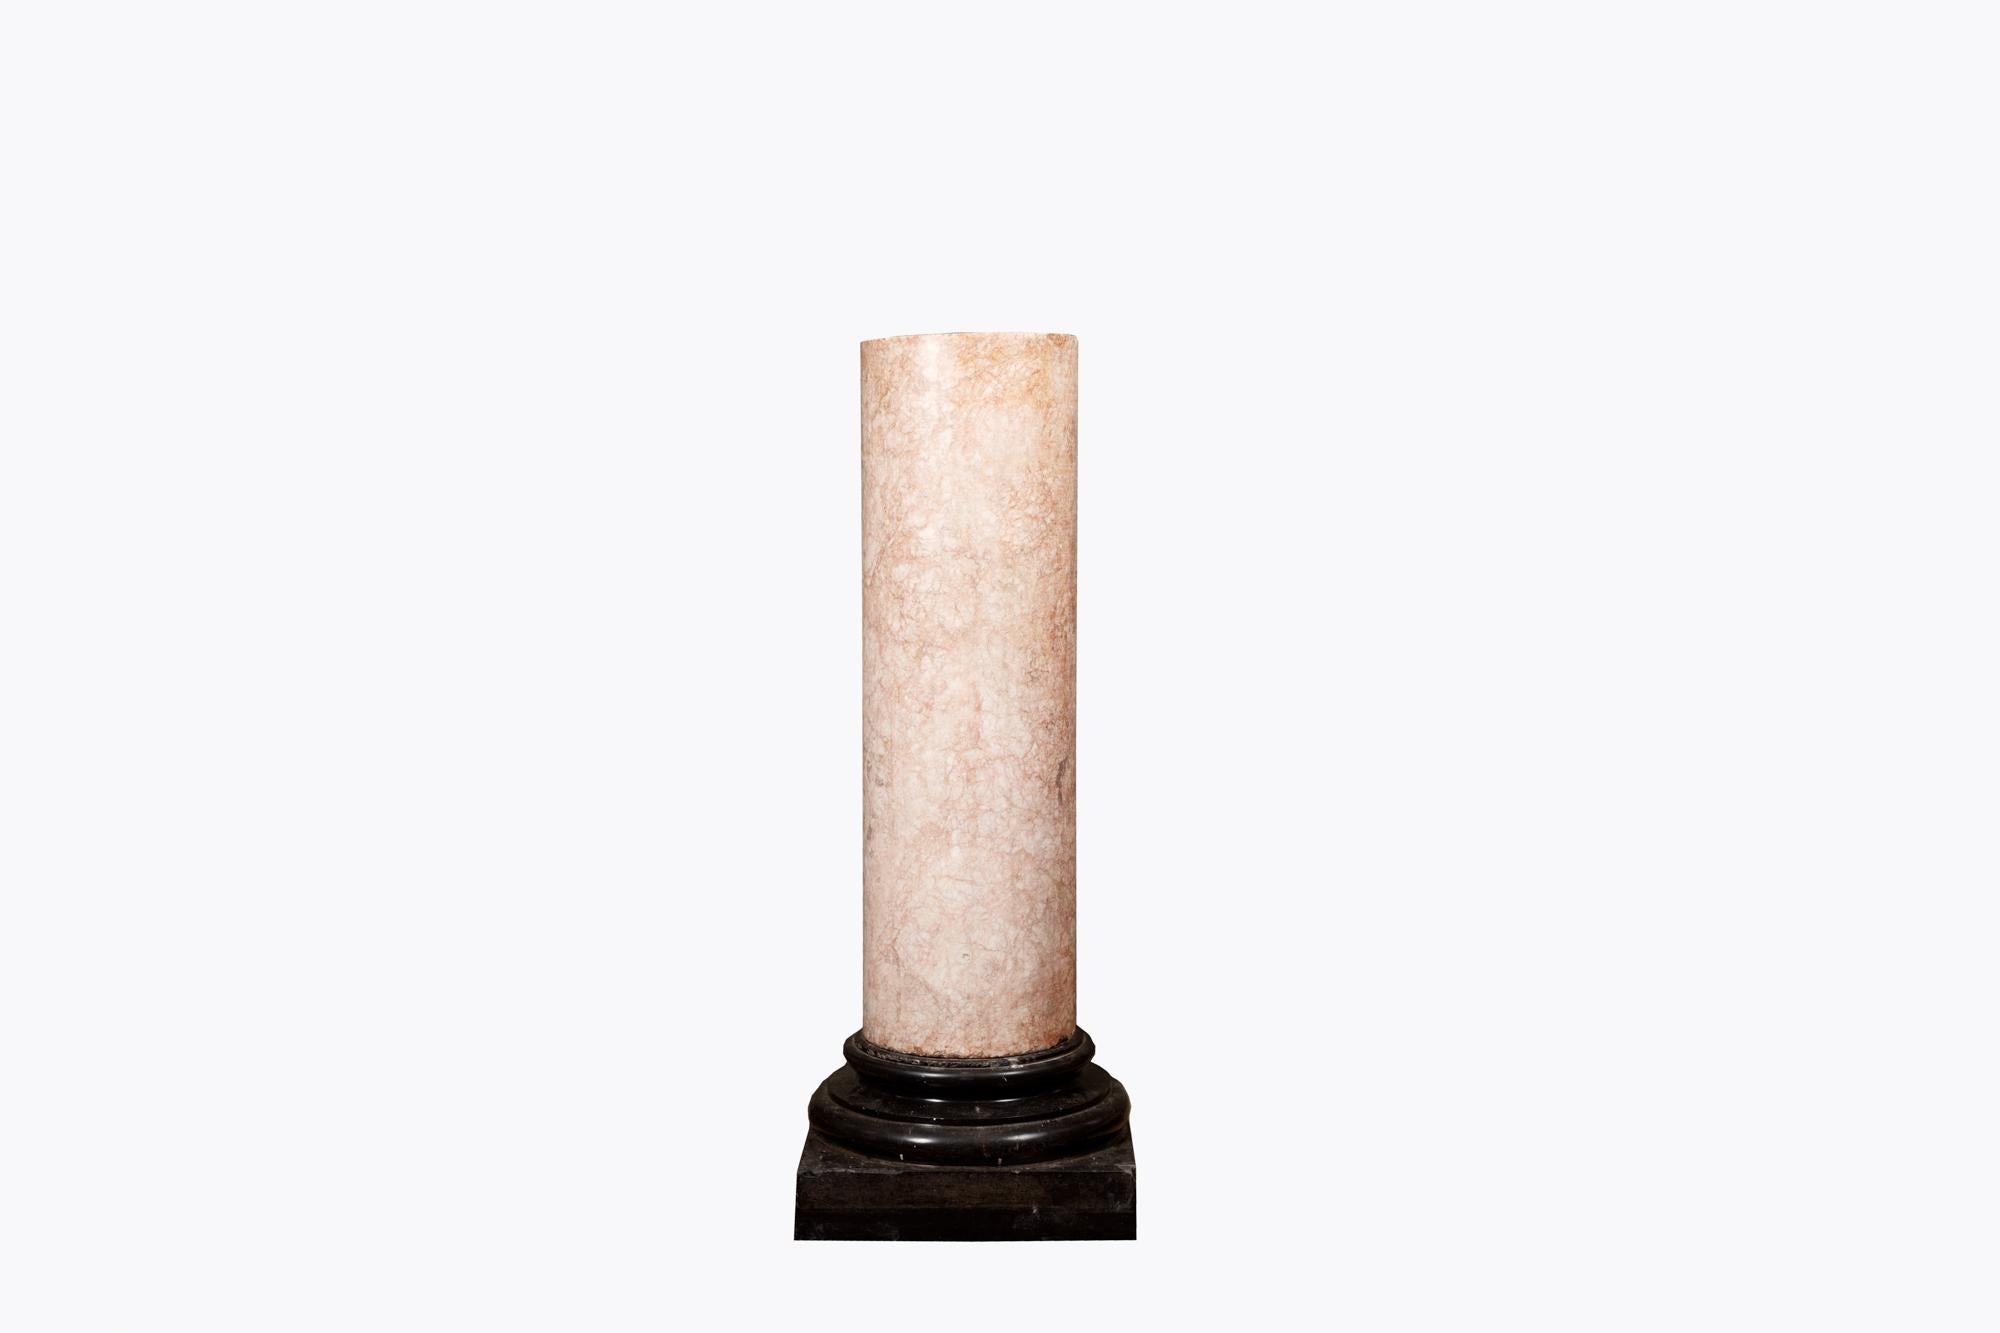 Rosé Boréal-Säule aus dem 19. Jahrhundert in Form einer klassischen Säule. Das massive zylindrische Fass aus roséfarbenem Boréalstein ruht auf einem quadratischen Sockel aus schwarzem Marmor.